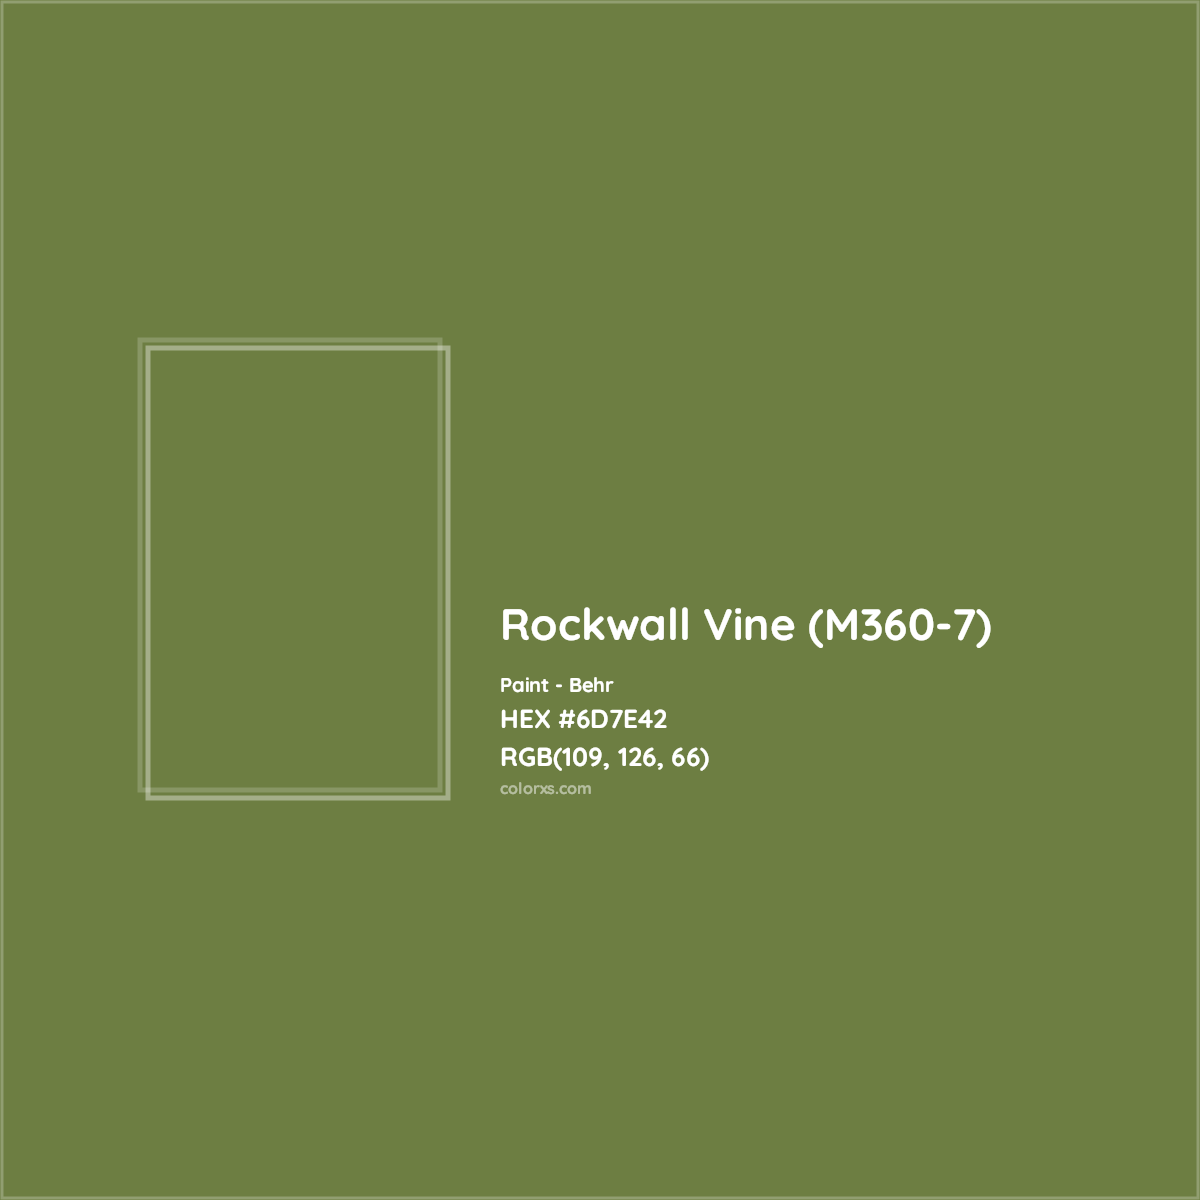 HEX #6D7E42 Rockwall Vine (M360-7) Paint Behr - Color Code